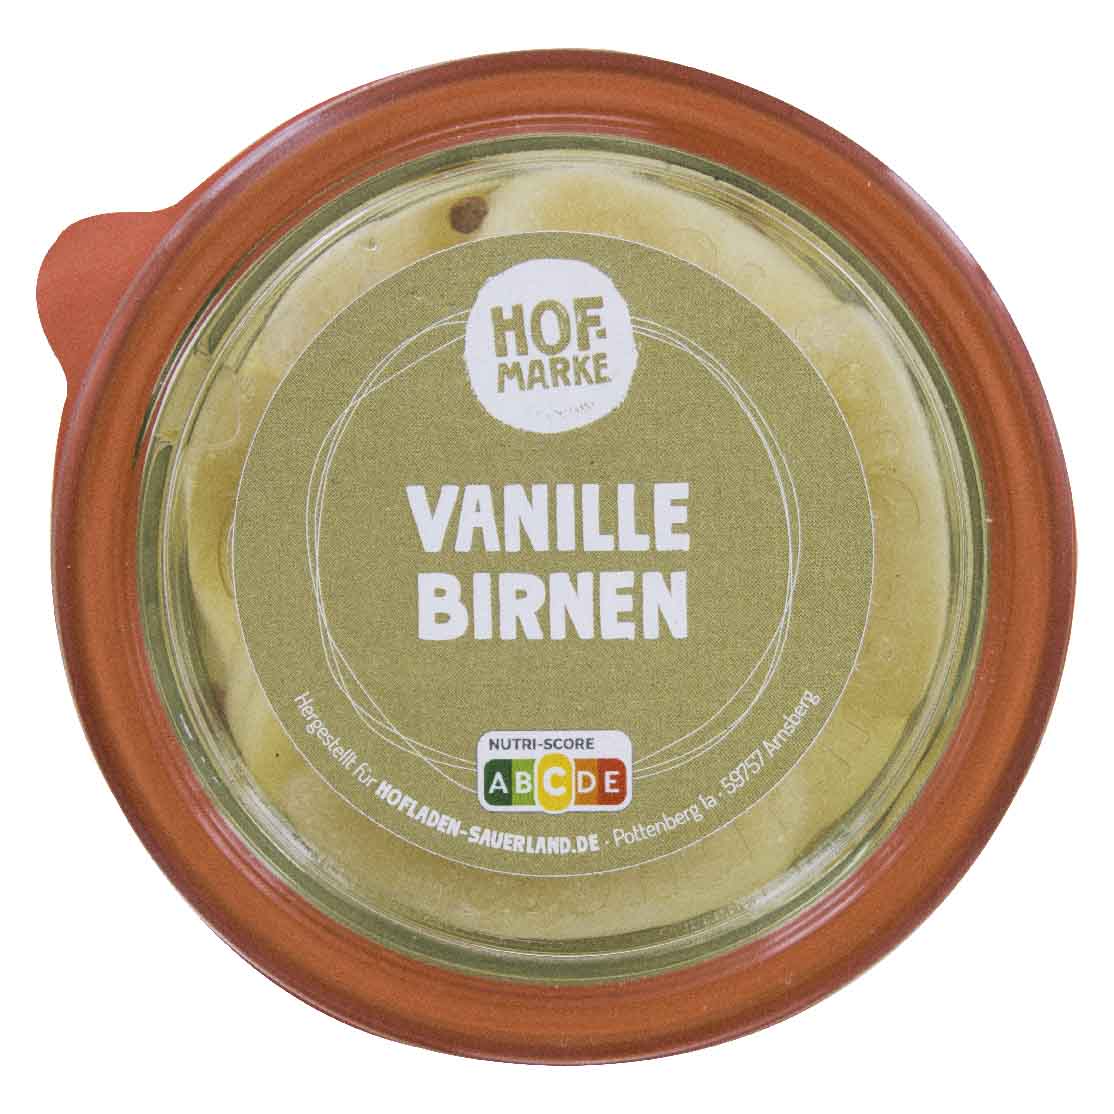 eingelegte Vanille-Birnen von unserer Hofmarke-zoom